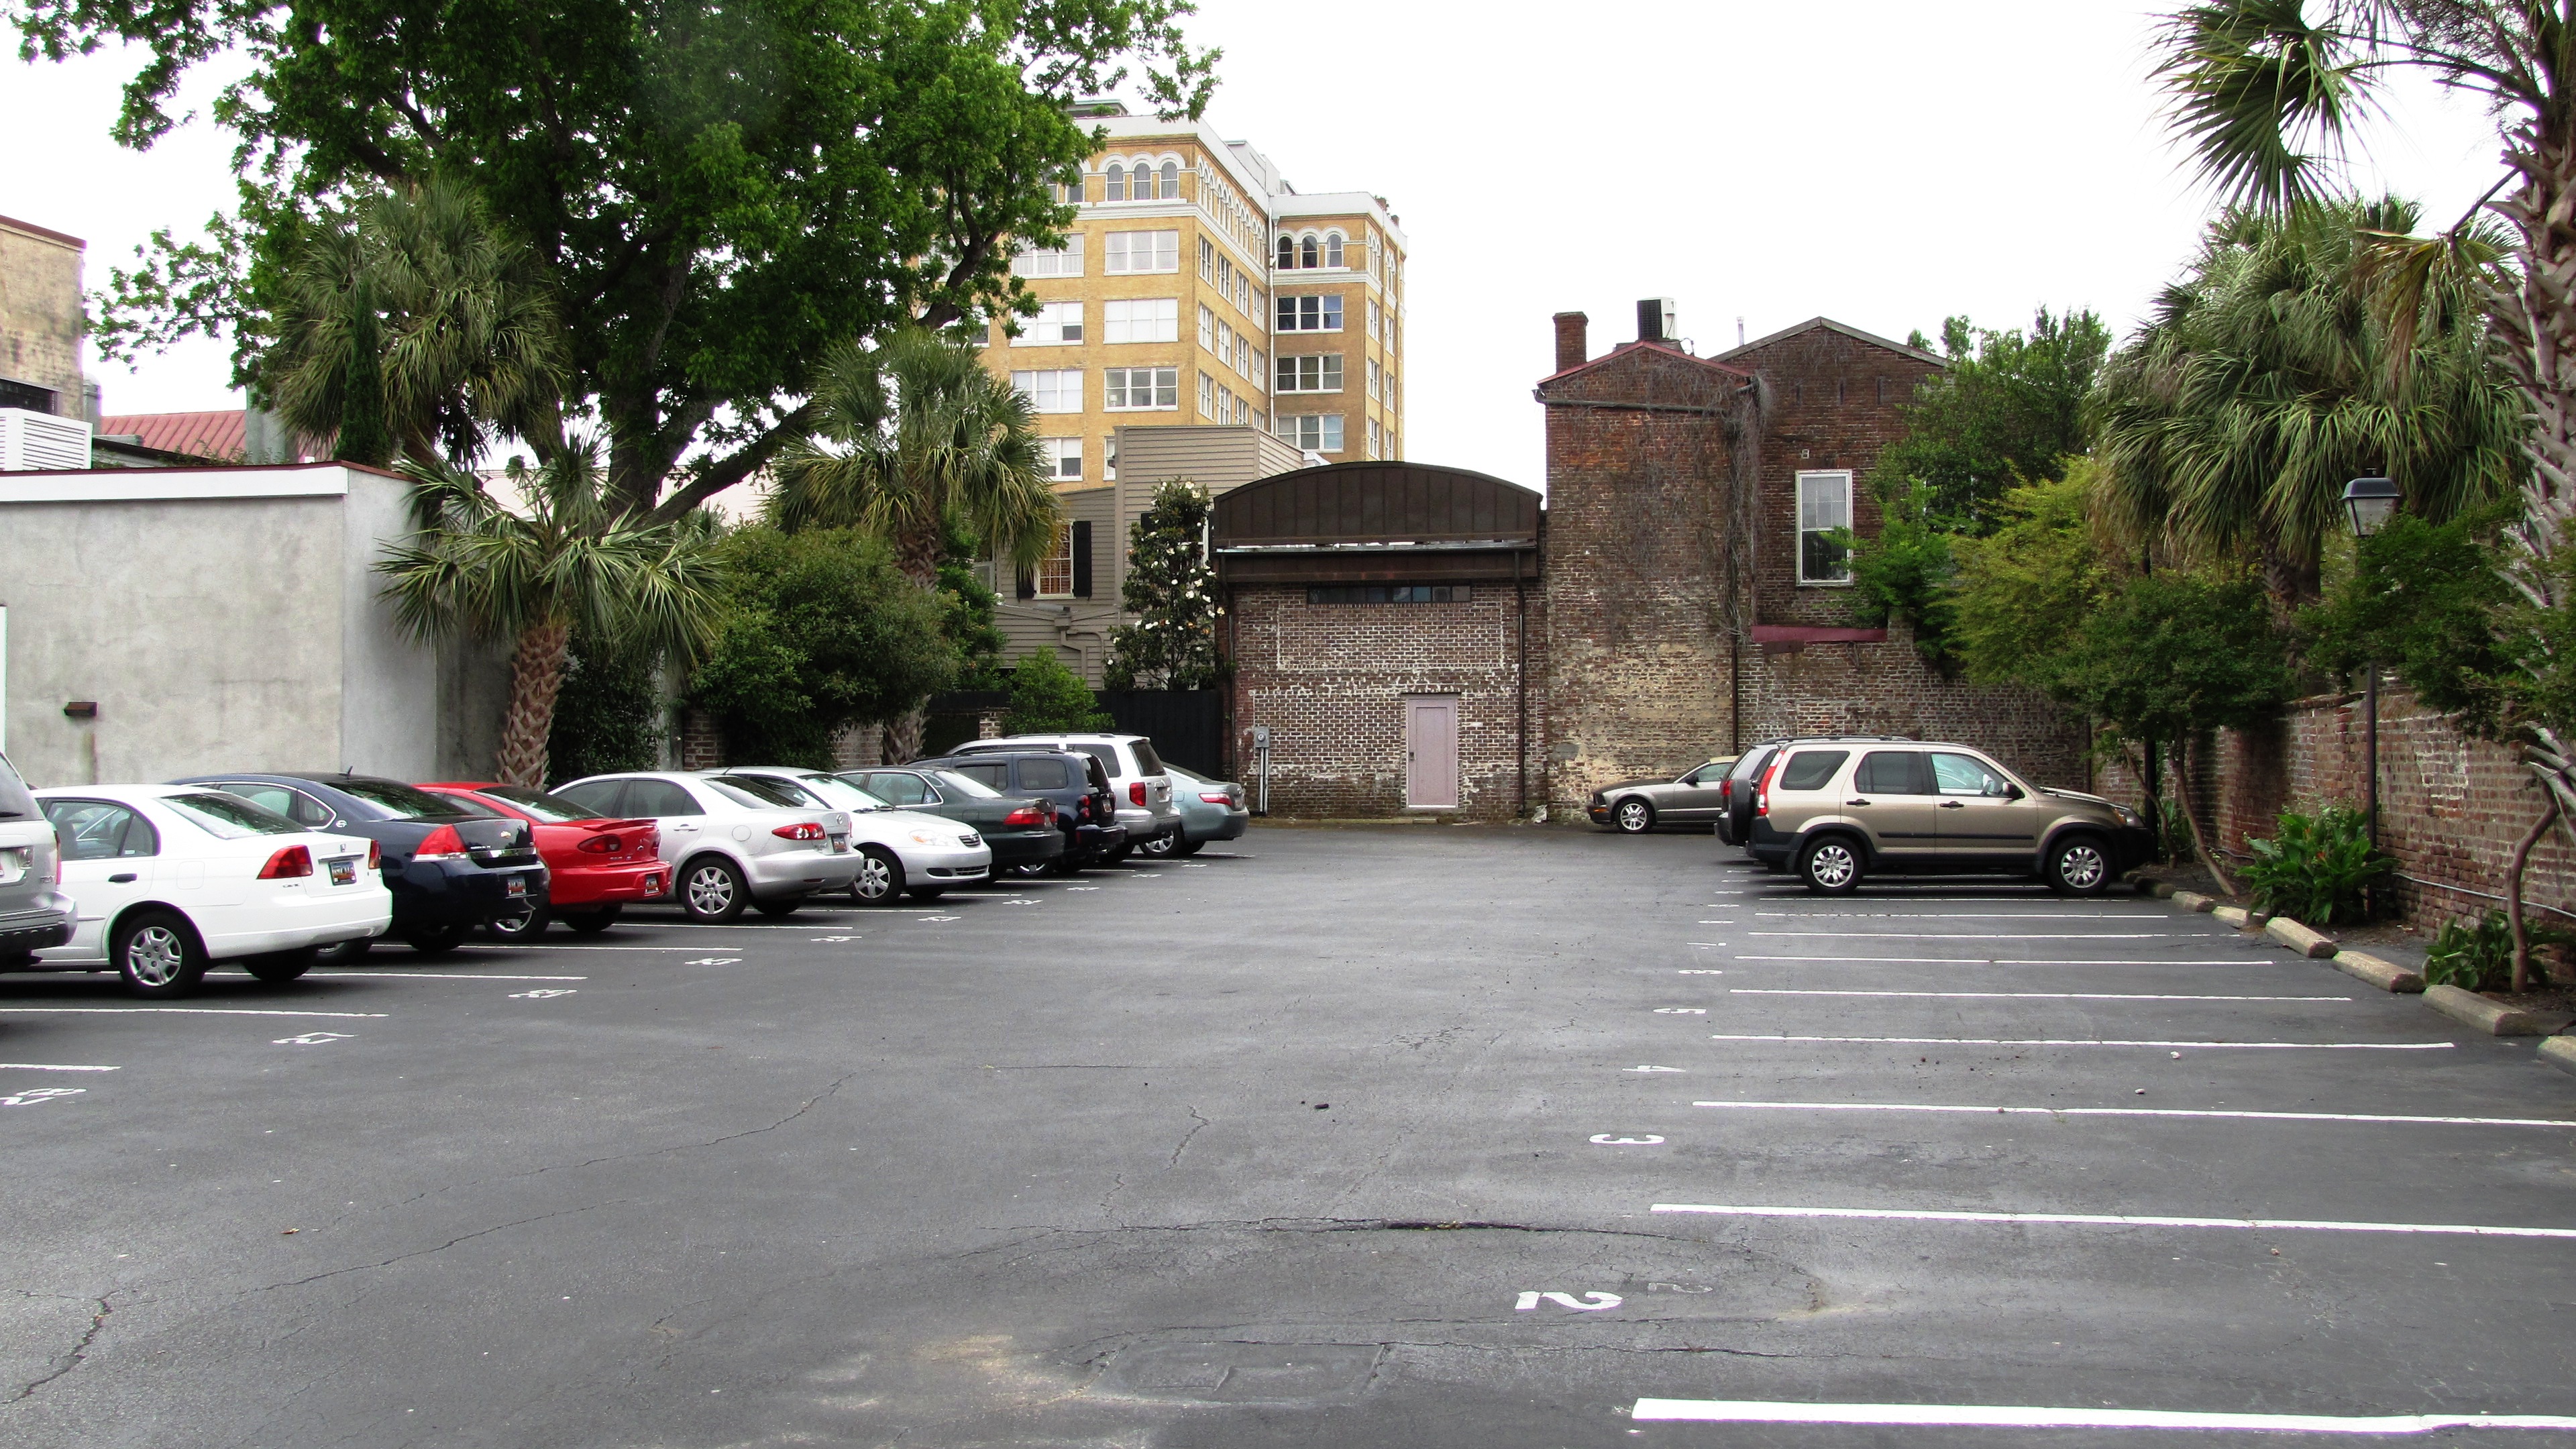 File:Old-slave-mart-rear-parking-lot-sc1.jpg - Wikimedia Commons